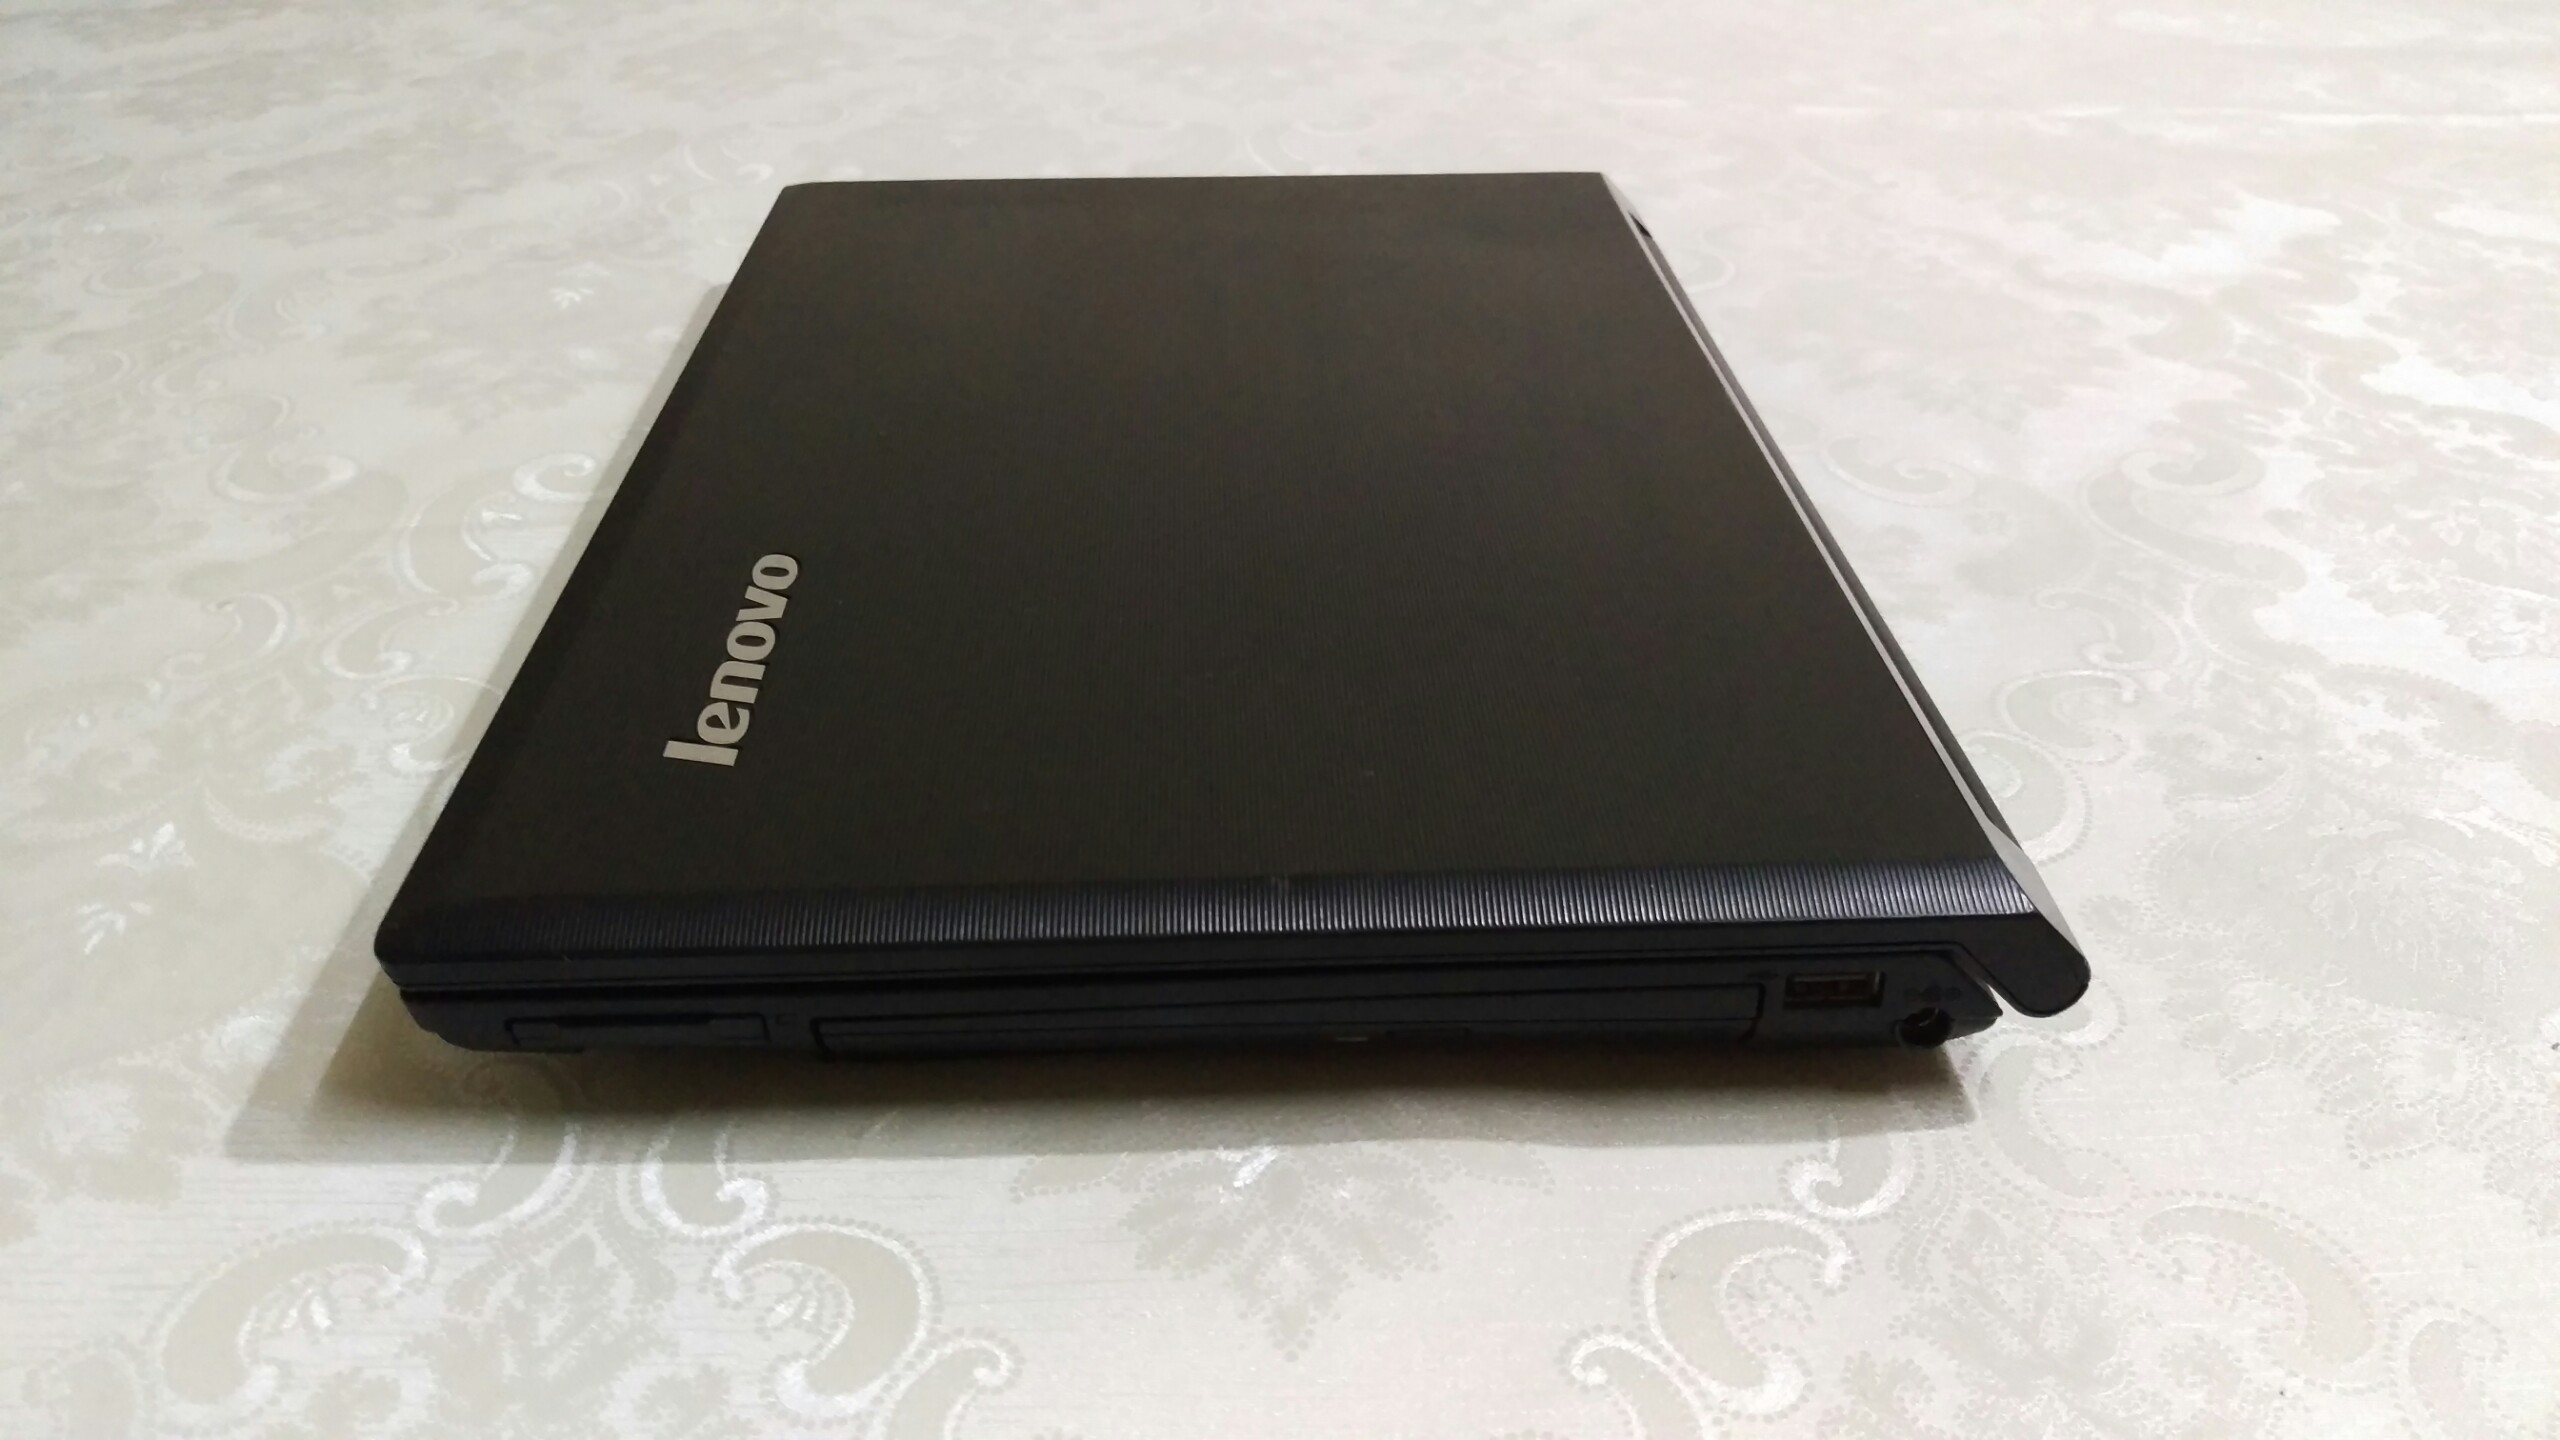 Laptop Lenovo B460 Core i5 2.4Ghz Ram 4G Ổ cứng SSD 120G Màn hình 14 inch